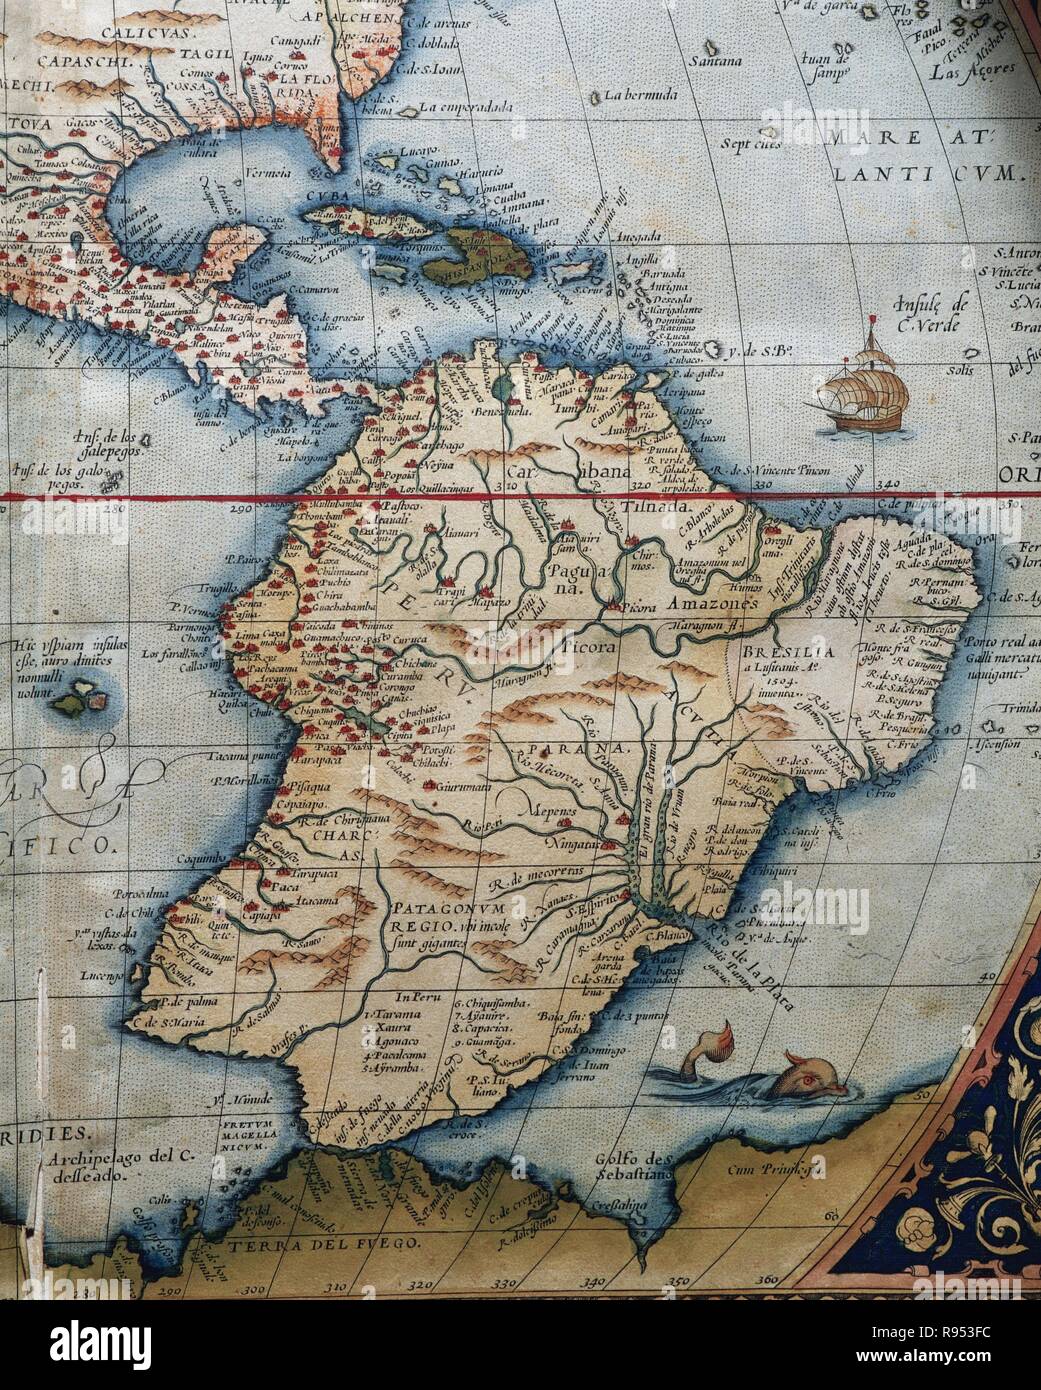 Karte von Mittel- und Südamerika. Theatrum Orbis Terrarum von Abraham Ortelius (1527-1598). Erste Ausgabe. Antwerpen, 1574. Stockfoto